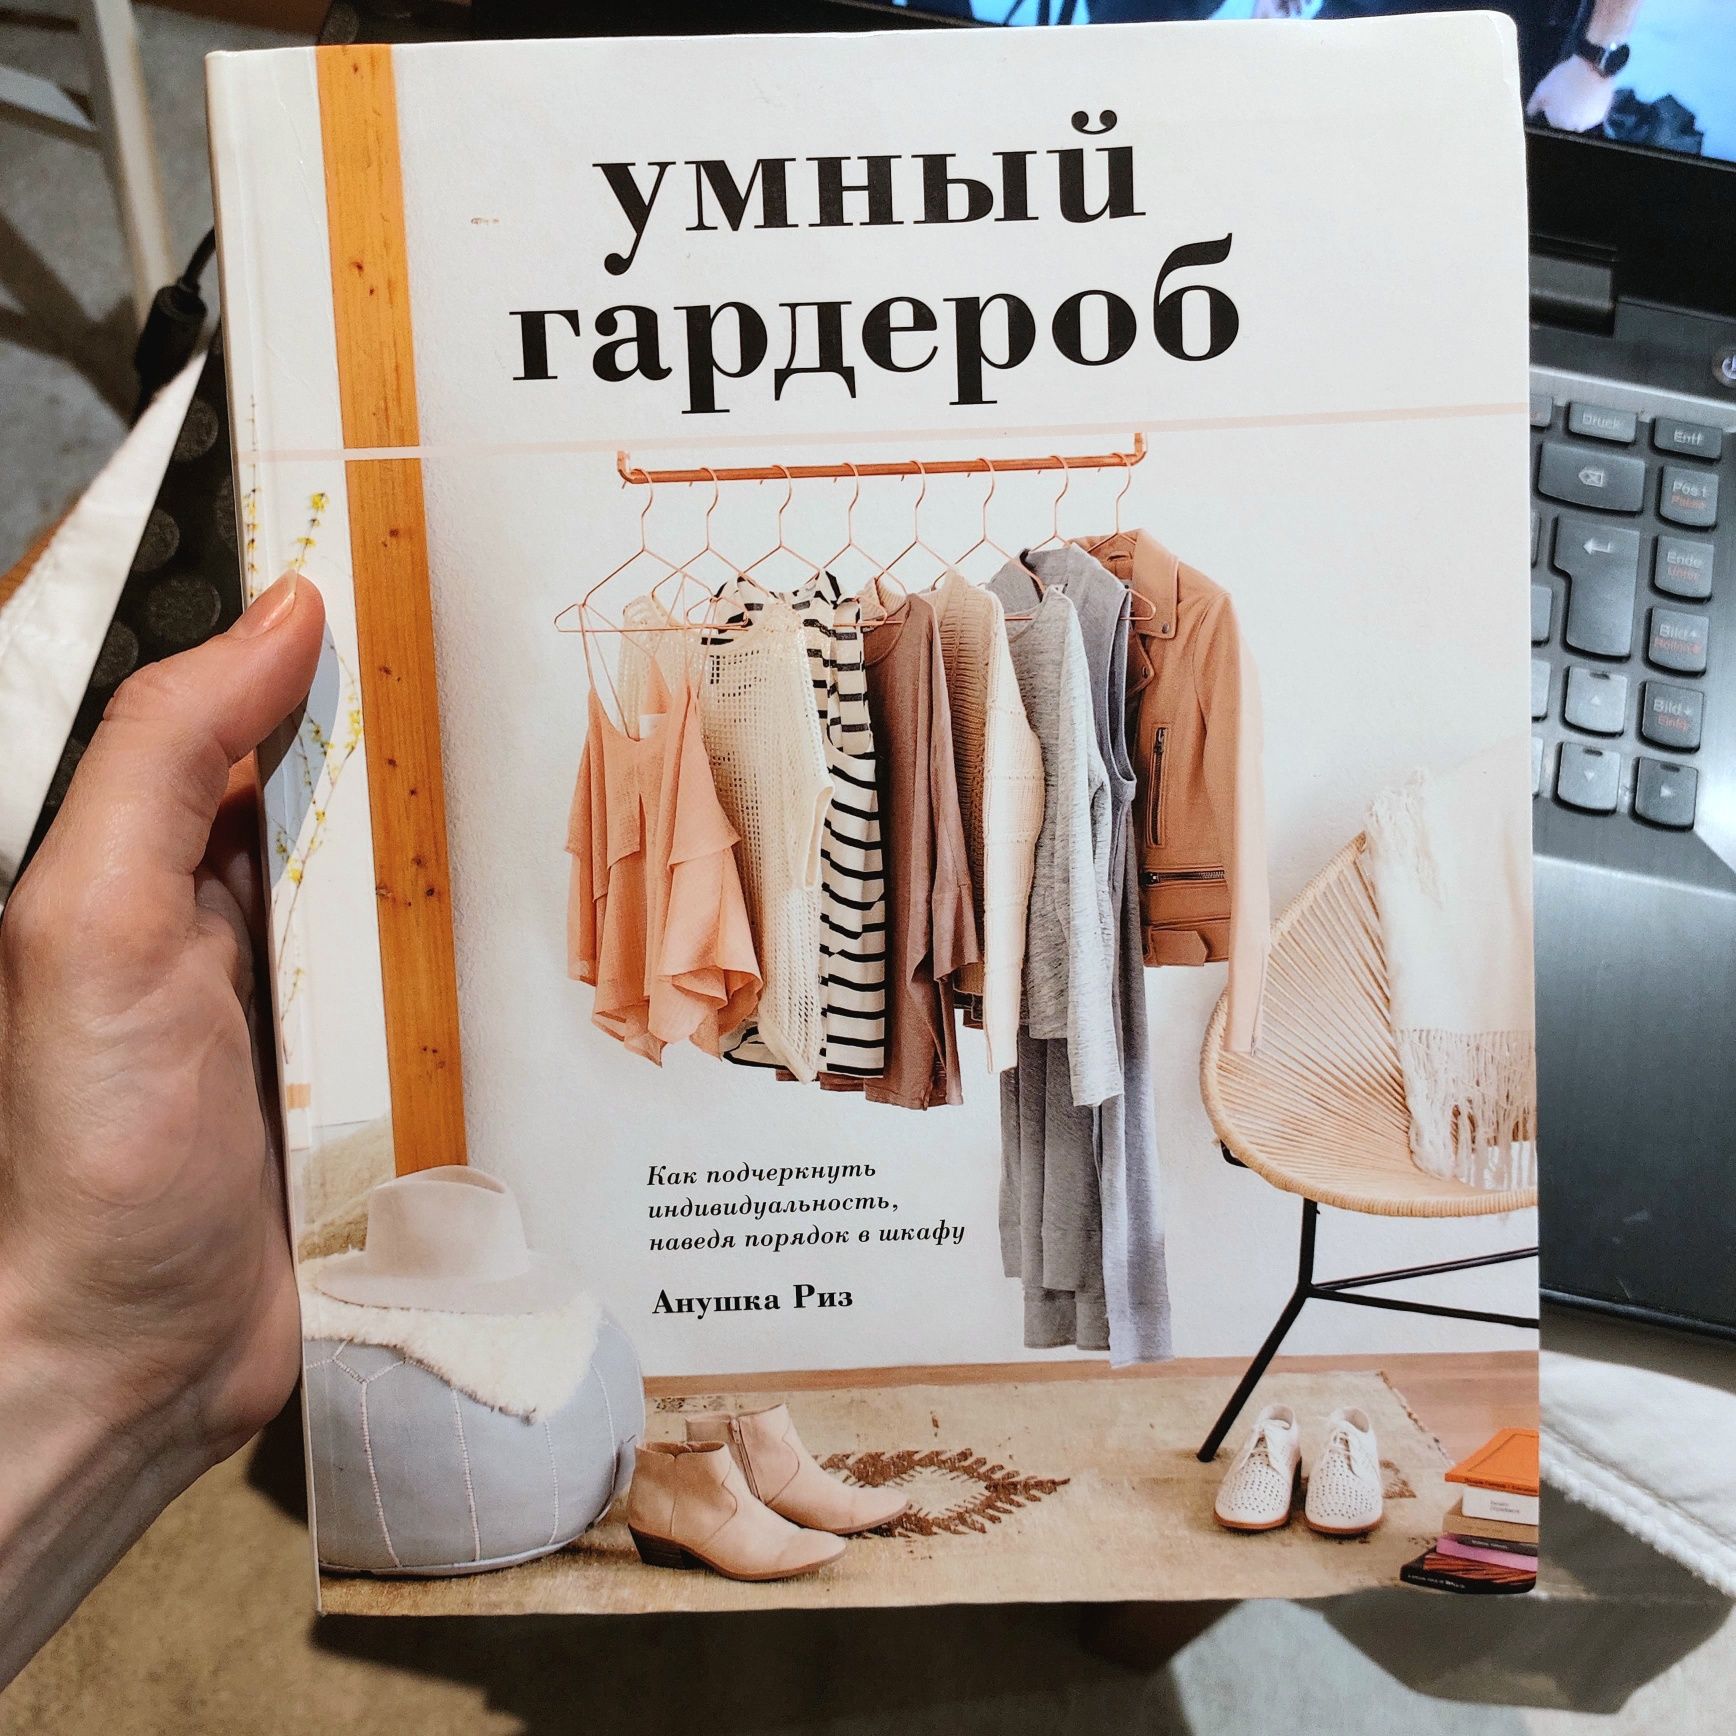 Книга Умный гардероб. Анушка Риз